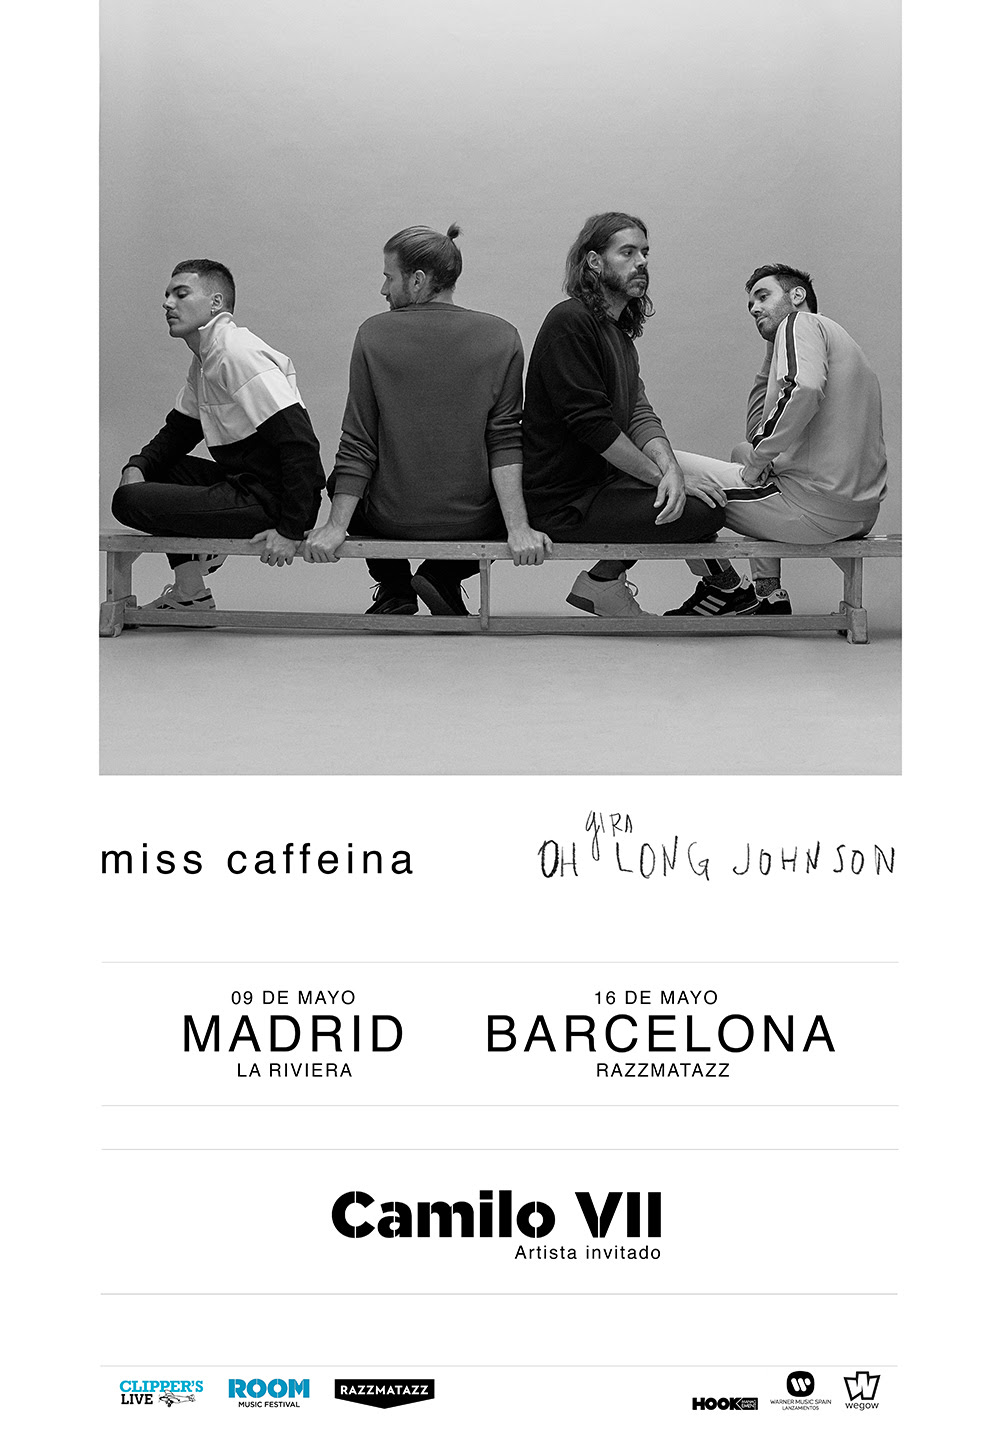 Camilo VII abrirán los conciertos de Miss Caffeina en Madrid y Barcelona en mayo